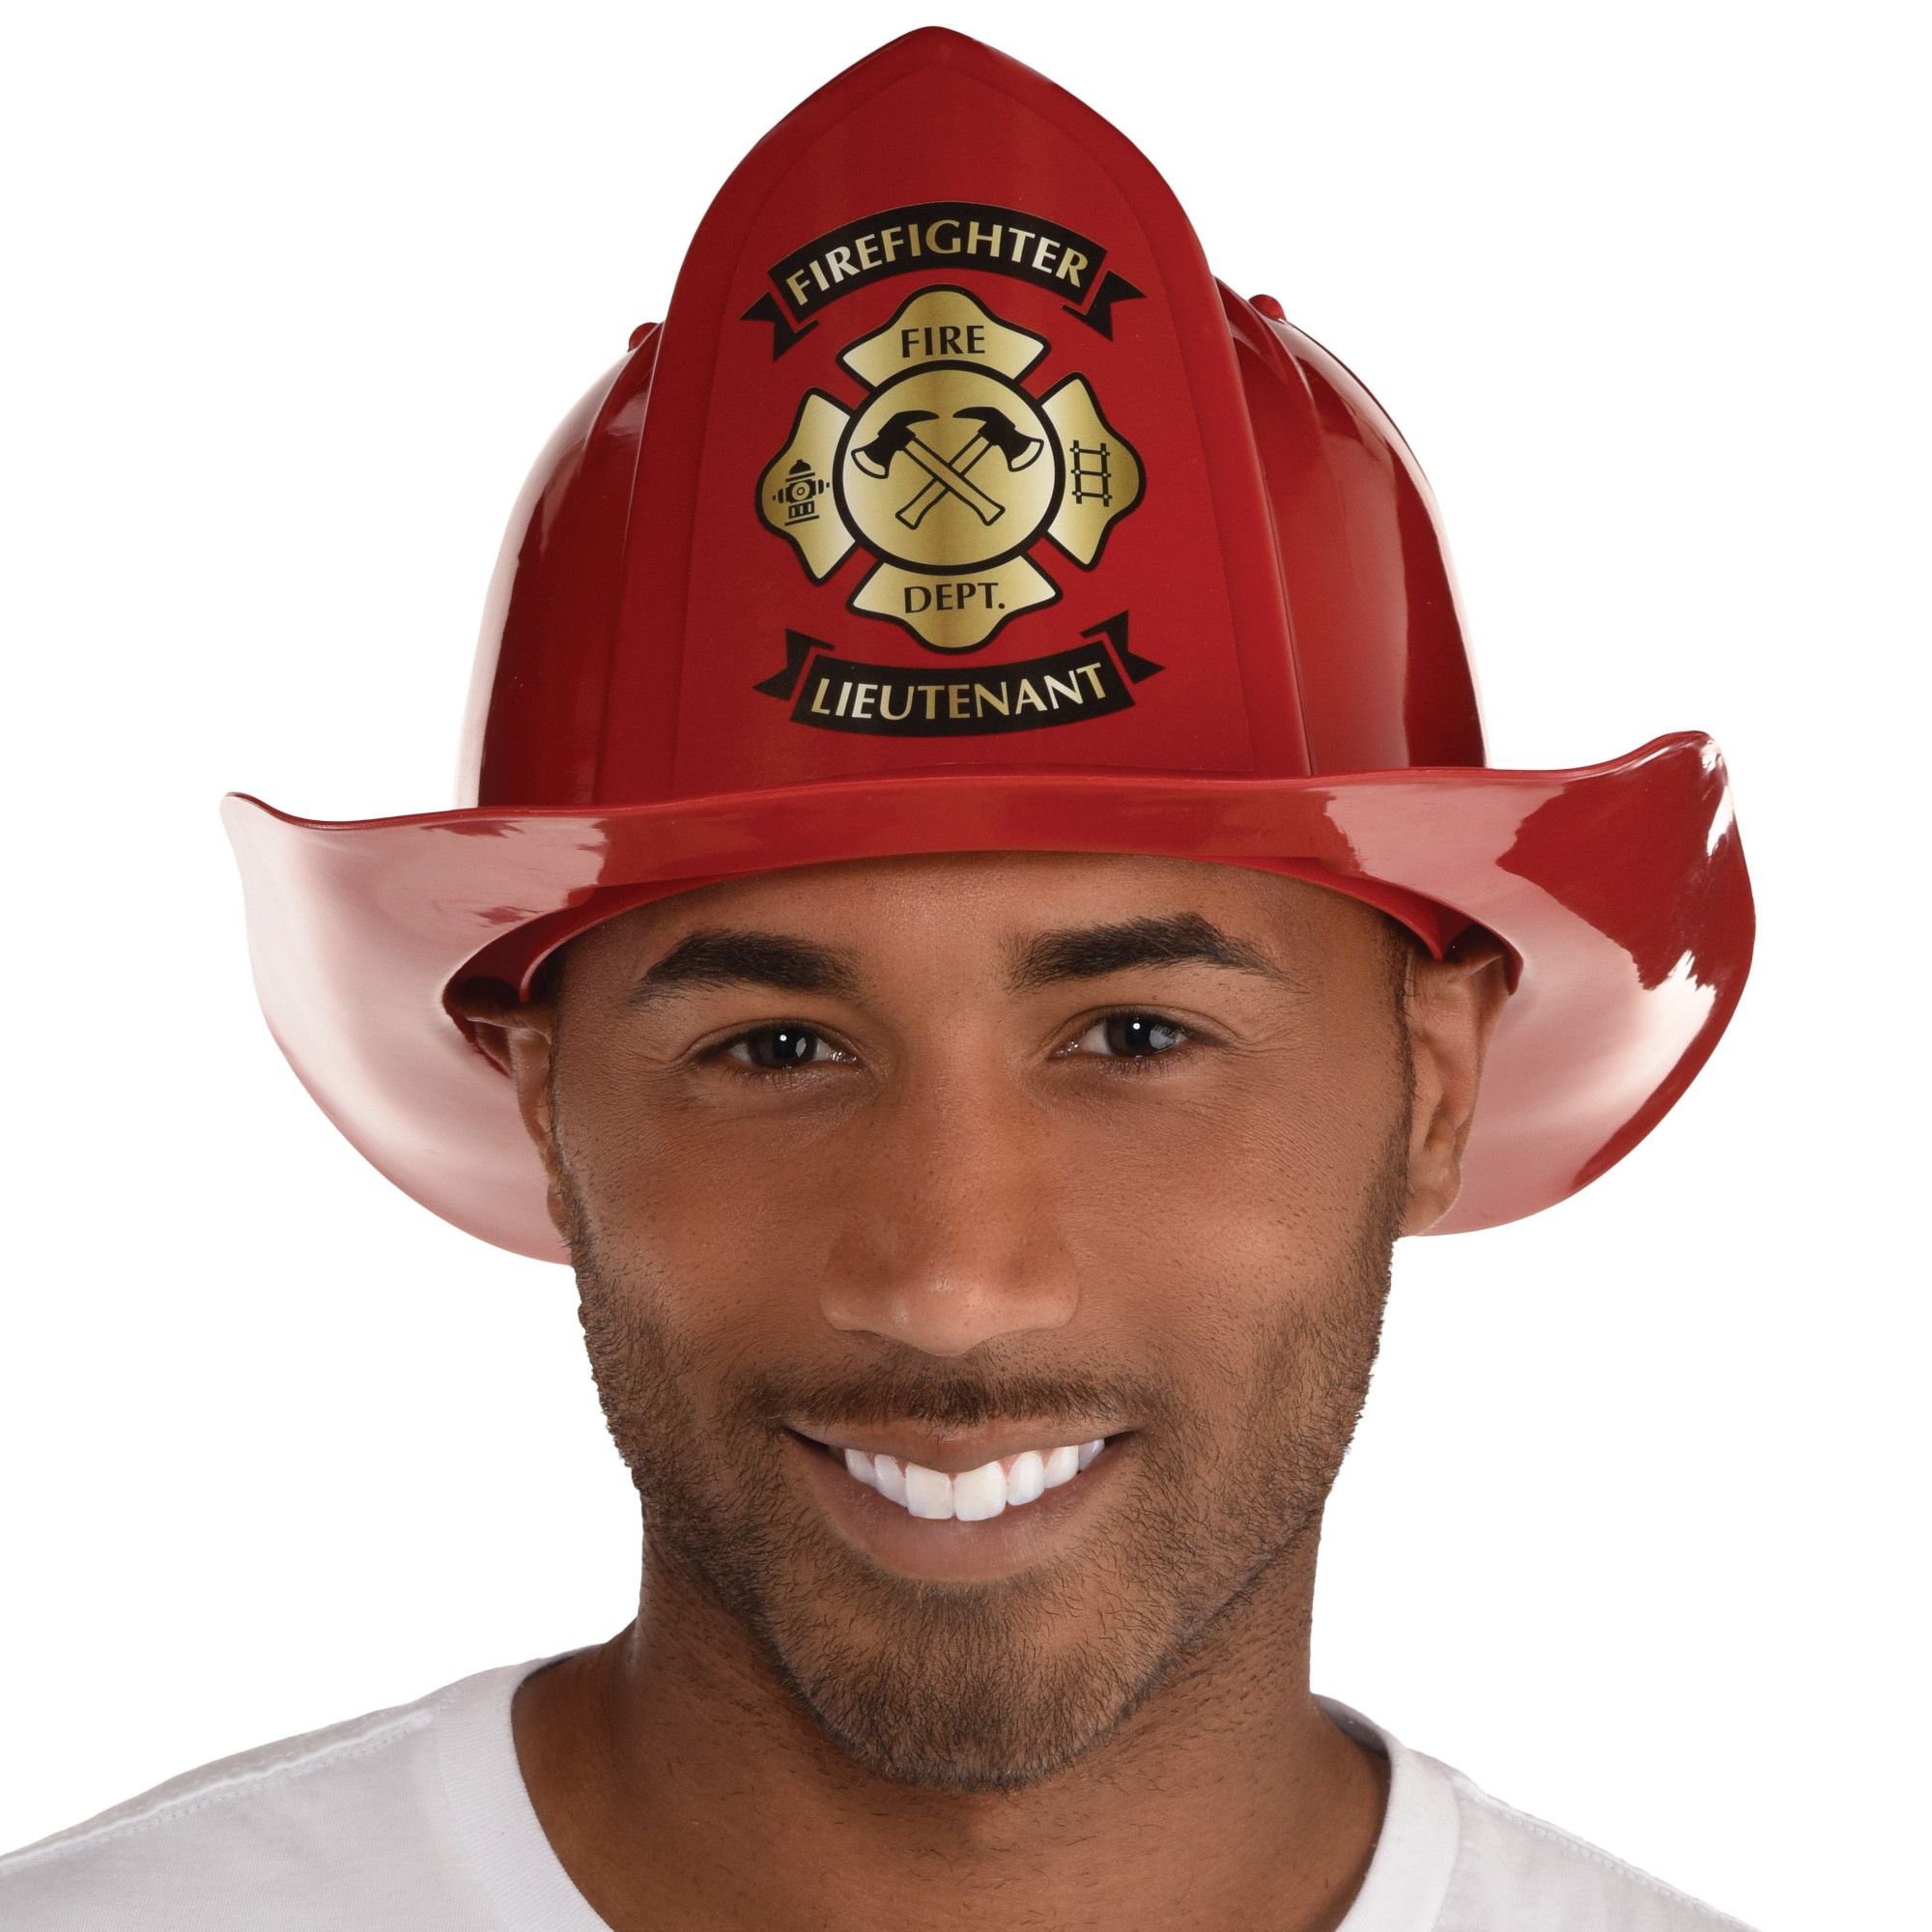 ZUCOS Costume de Pompier pour Enfants - Jeu de rôle - Jouets Pompie